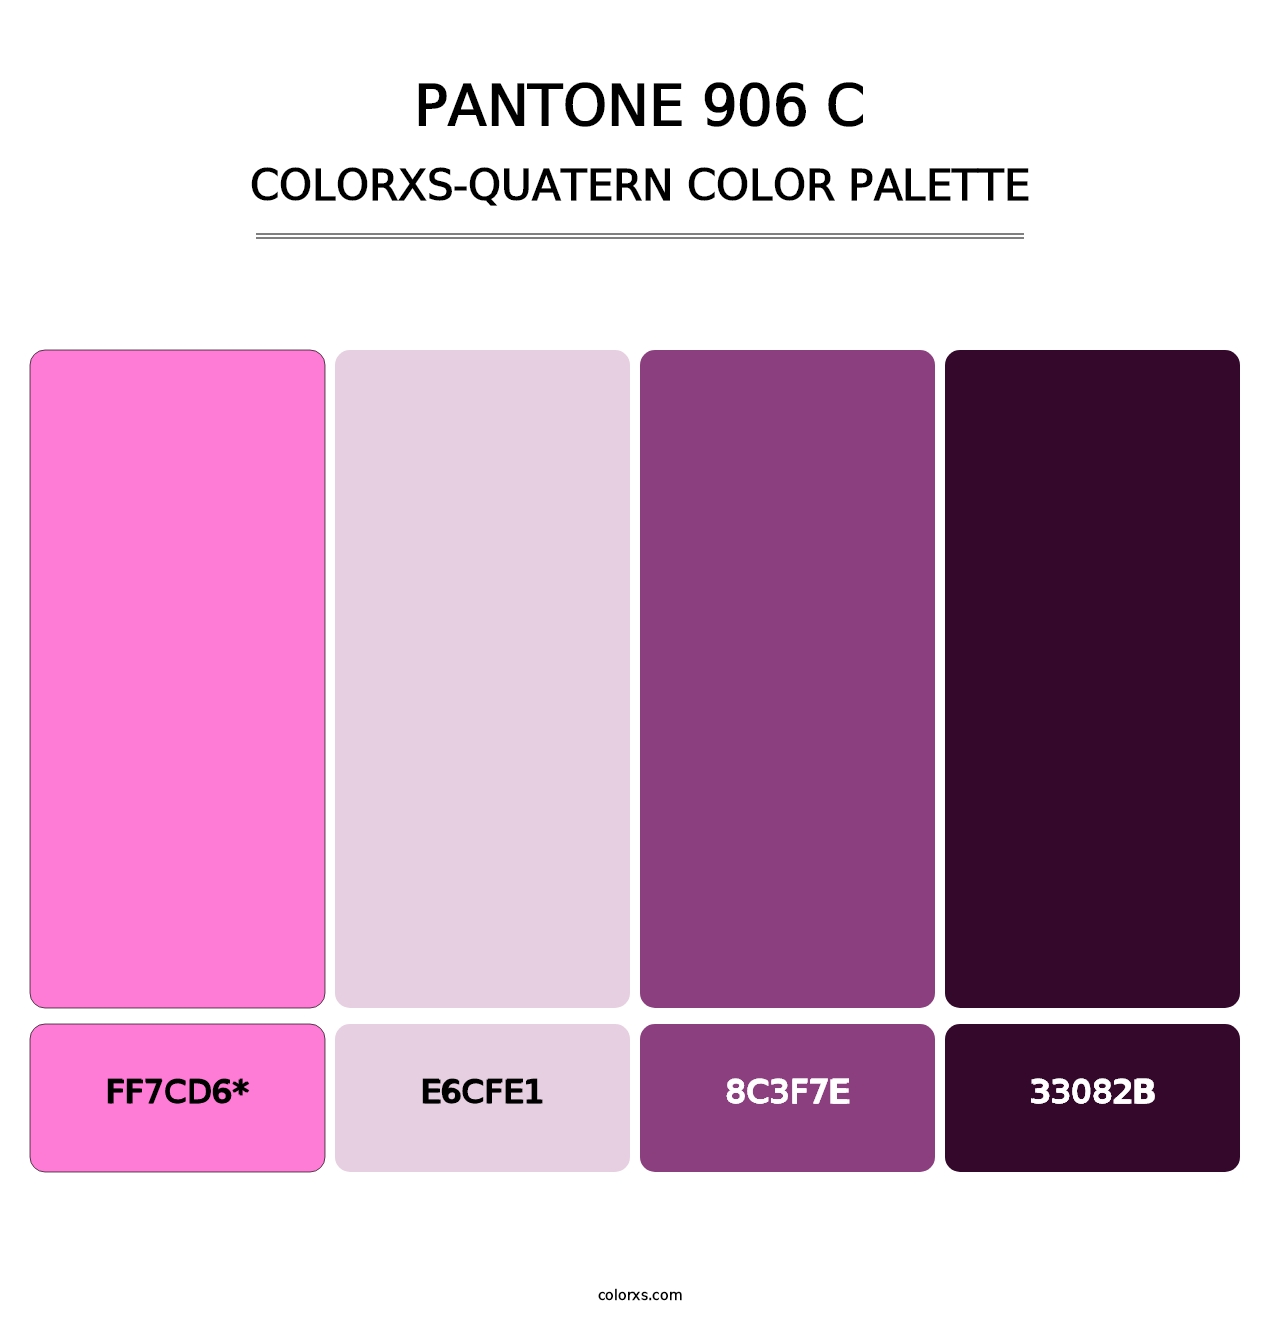 PANTONE 906 C - Colorxs Quatern Palette